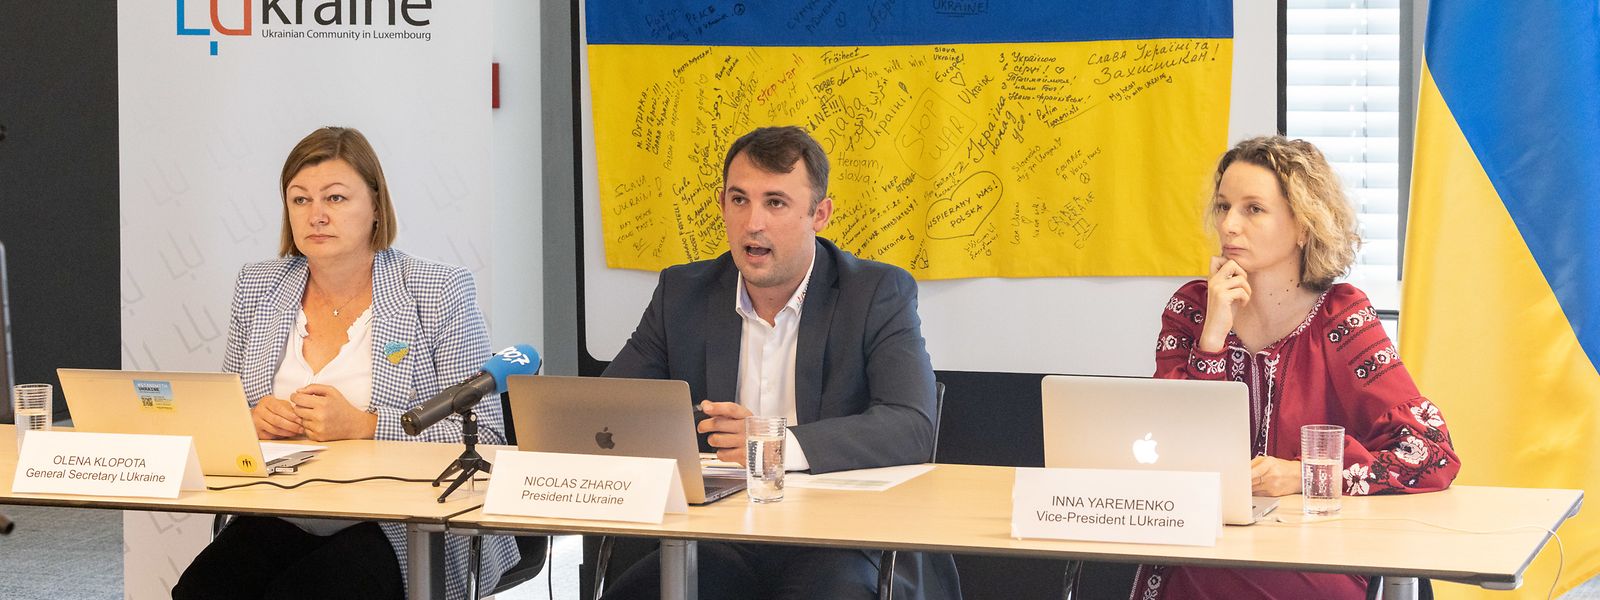 Olena Klopota, Nicolas Zharov et Inna Yaremenko ont présenté les actions de LUkraine asbl à la veille de l'entrée dans le septième mois de conflit.